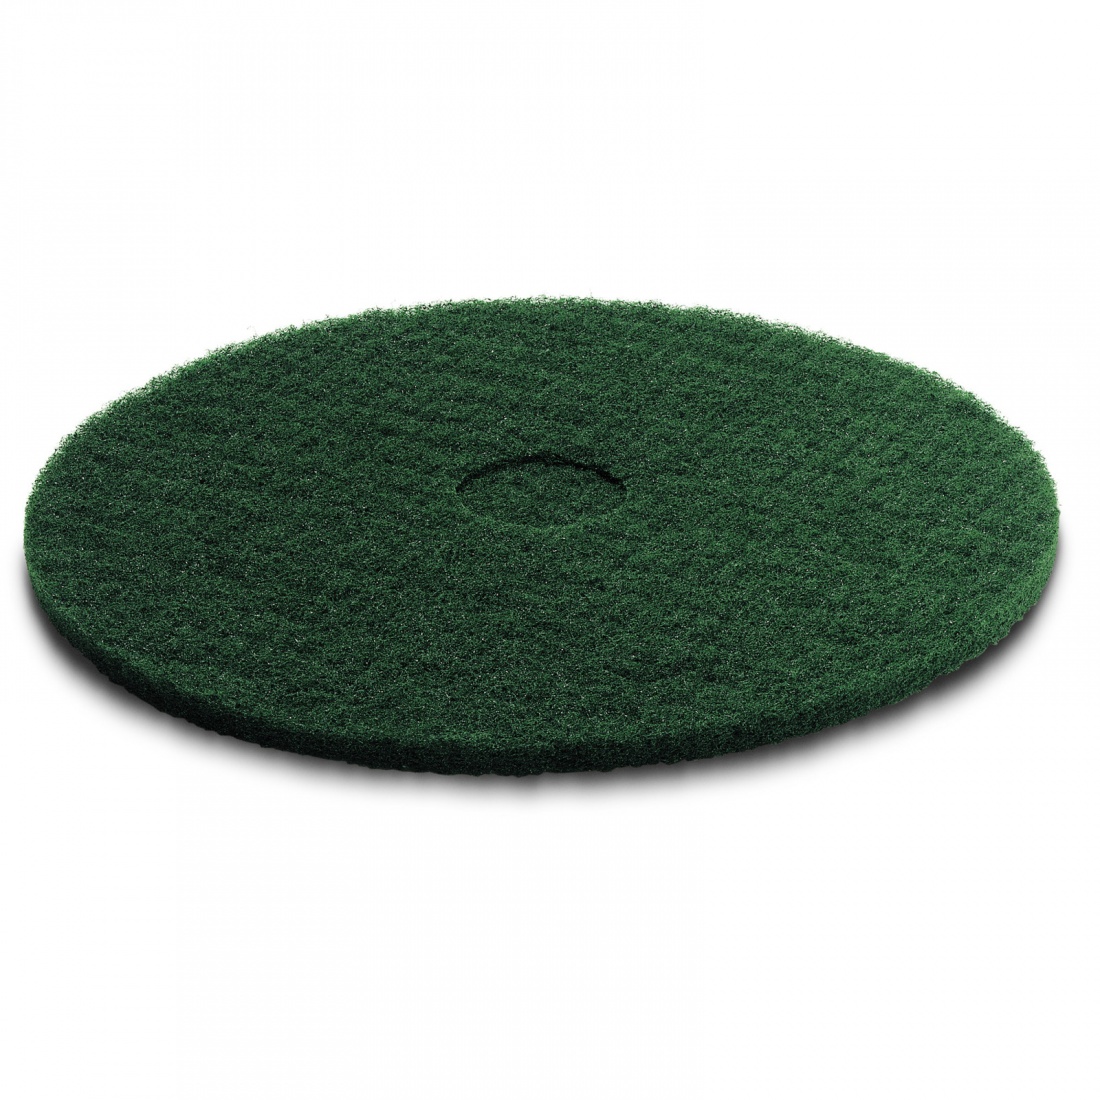 Пад, средне жесткий, зеленый, 432 mm